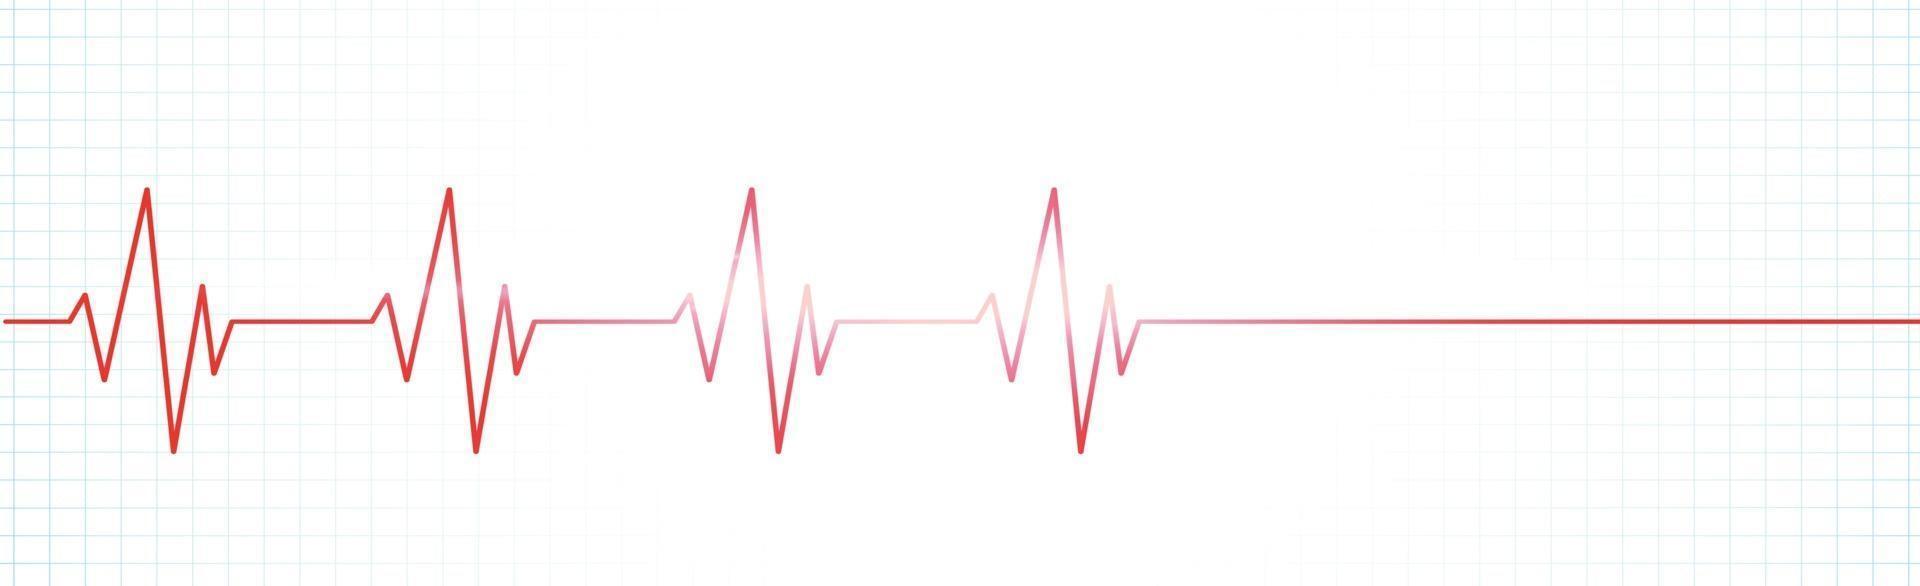 pulso do coração - linha vermelha curva em um fundo branco vetor